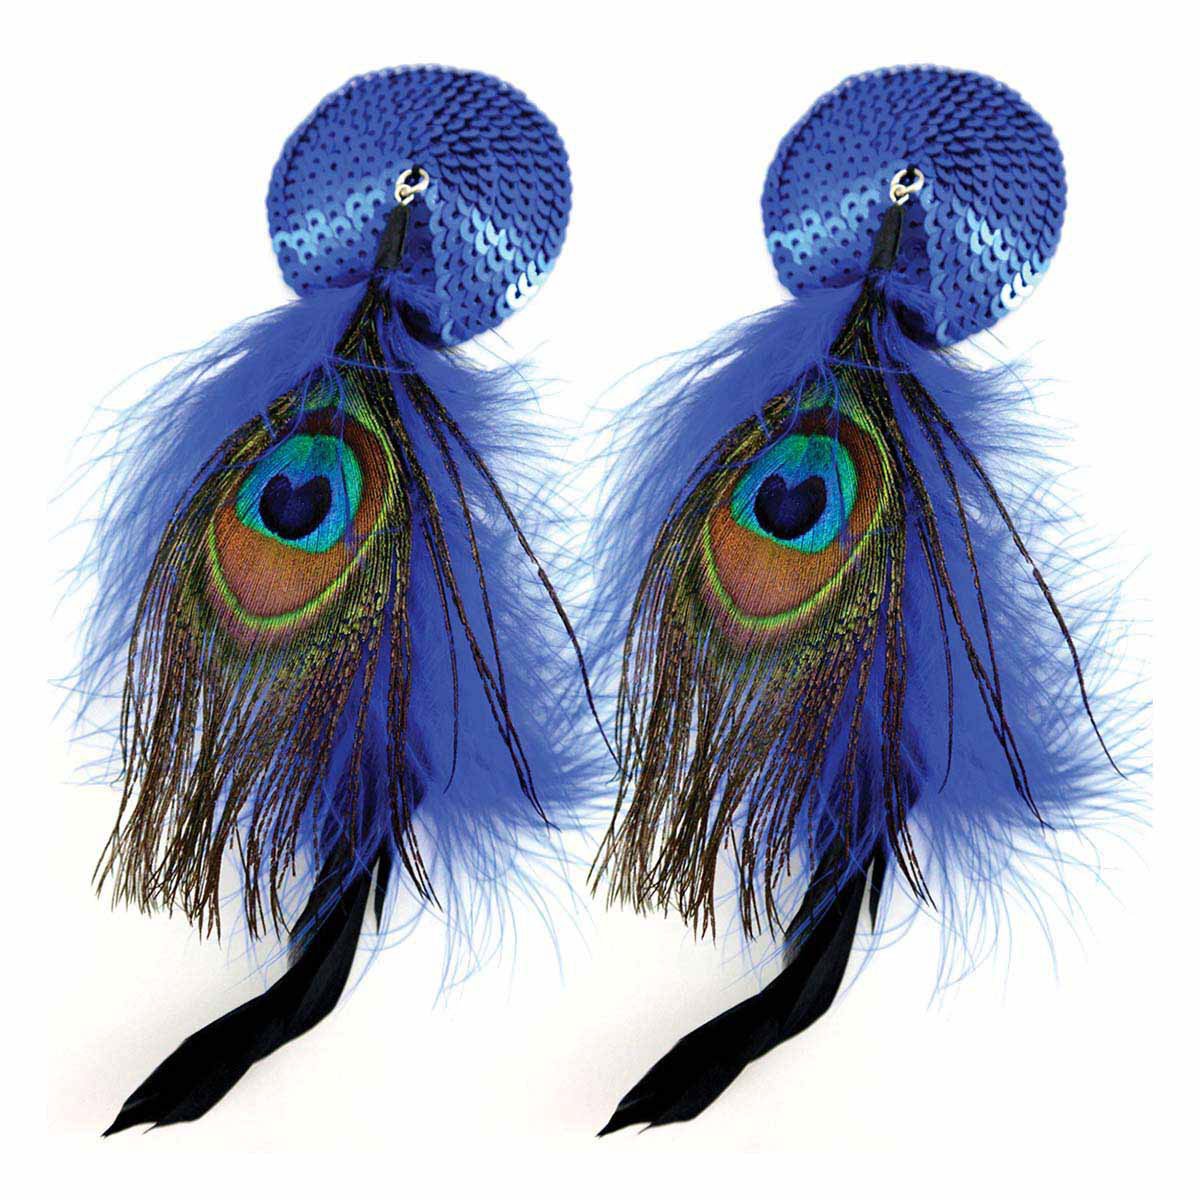 Bijoux de Nip Round Blue Sequin Pasties w/ Feathers